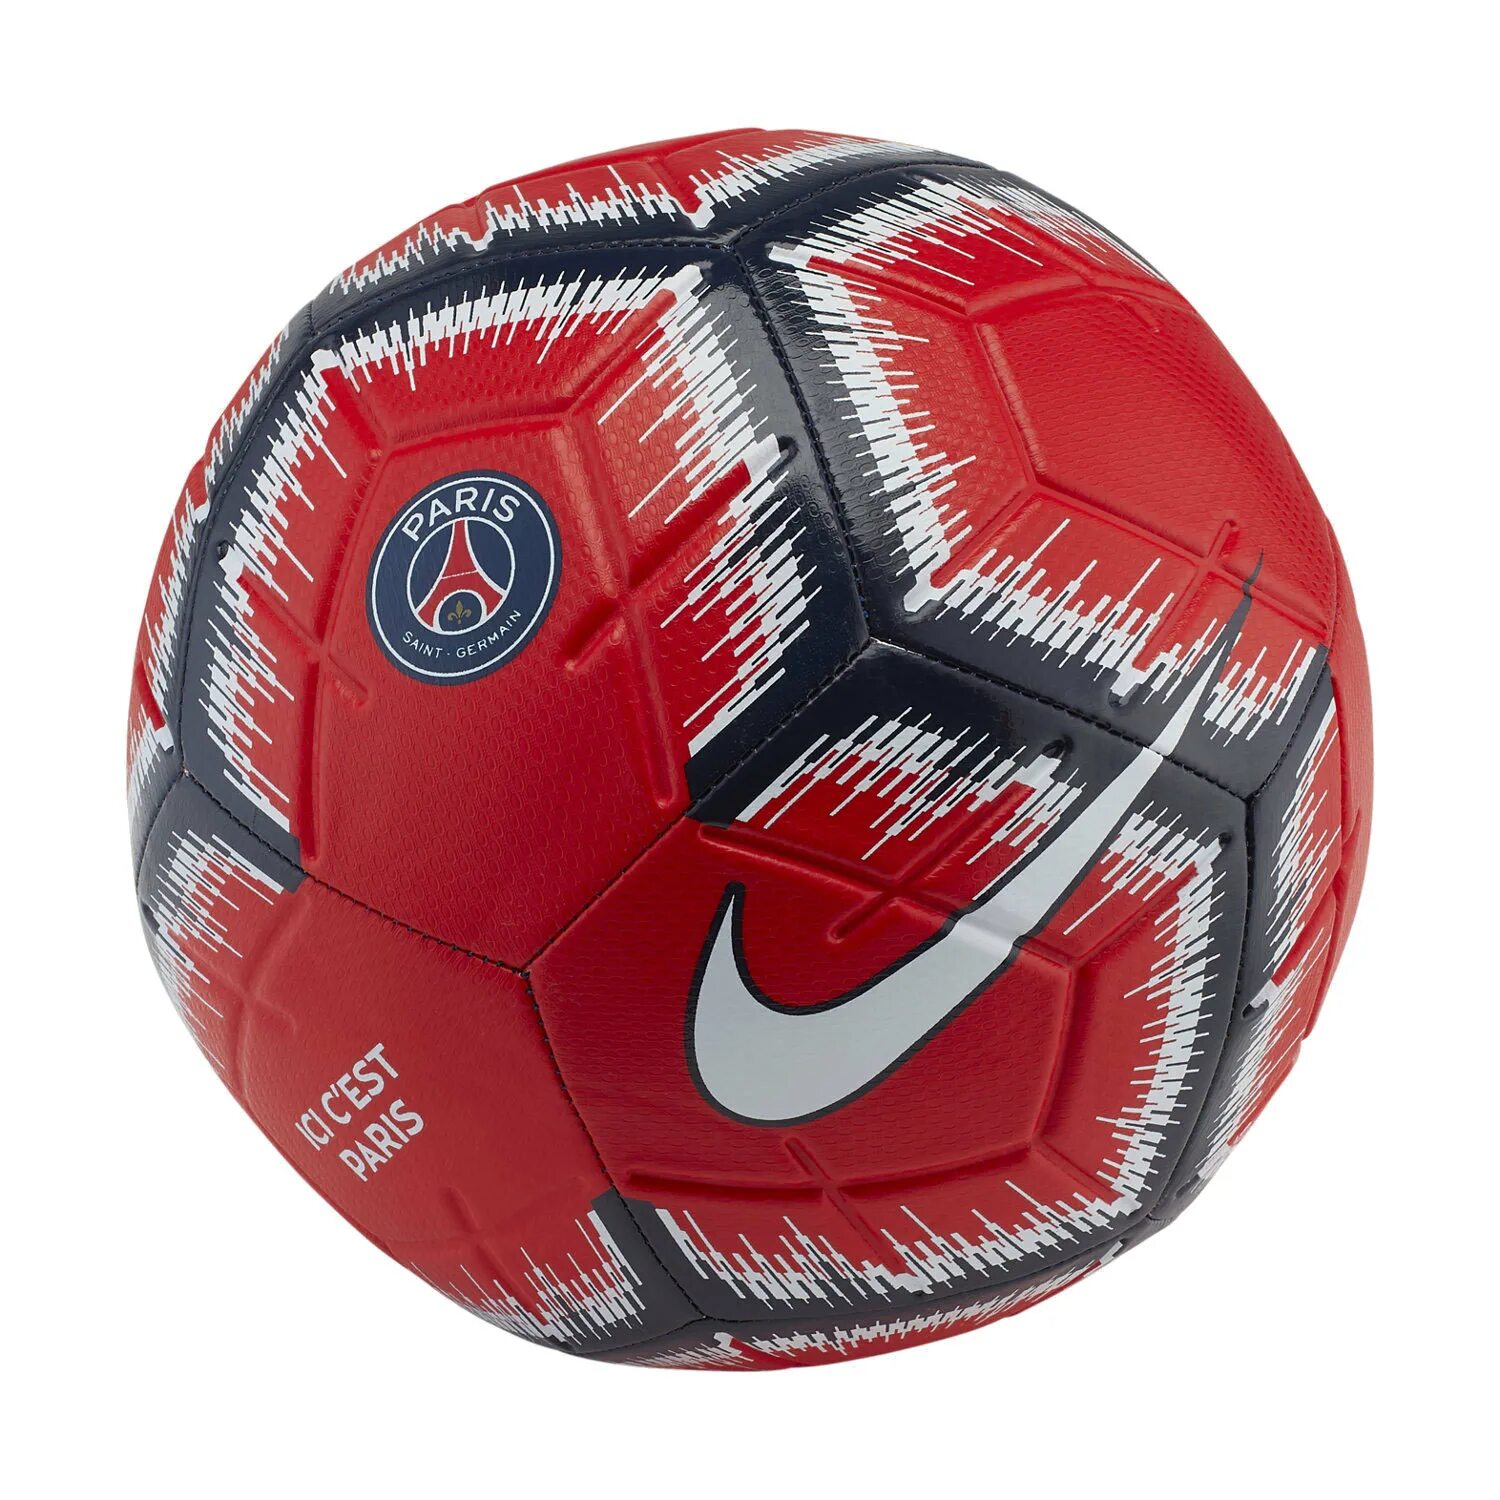 Футбольный мяч Nike PSG. Мяч футбольный Nike Paris Saint-Germain. Футбольный мяч найк ПСЖ. Мяч Nike 2022. Мячи футбольные москва